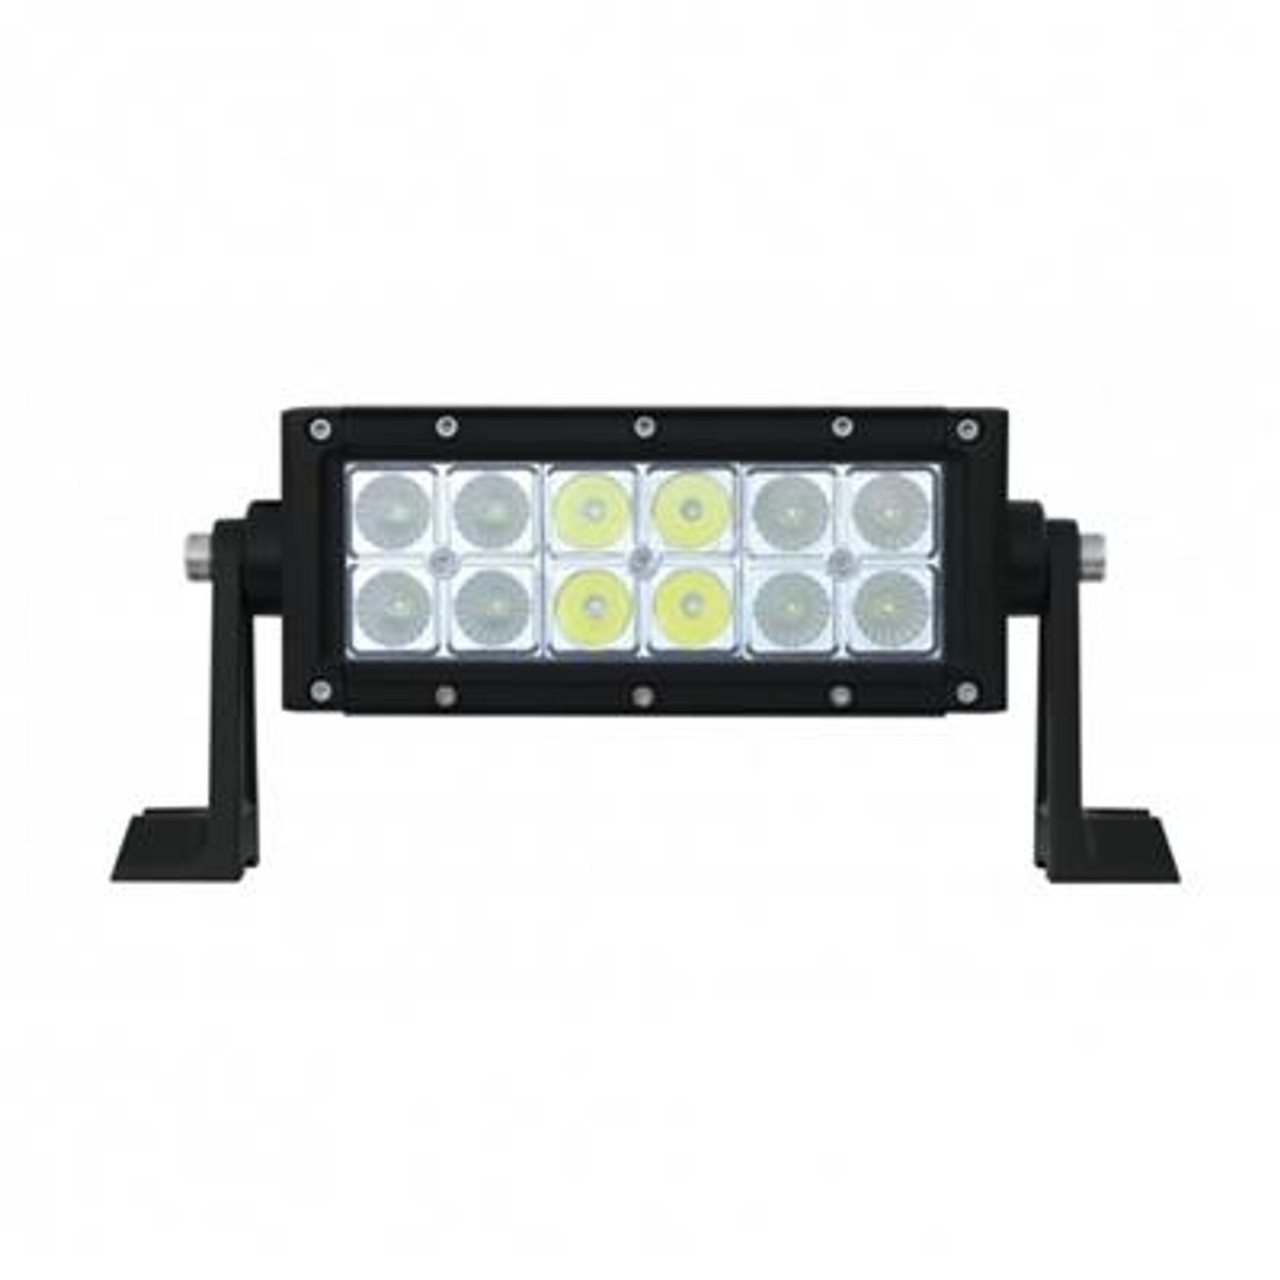 12 High Power LED Dual Row 7-1/2" Flood/Spot Light Bar